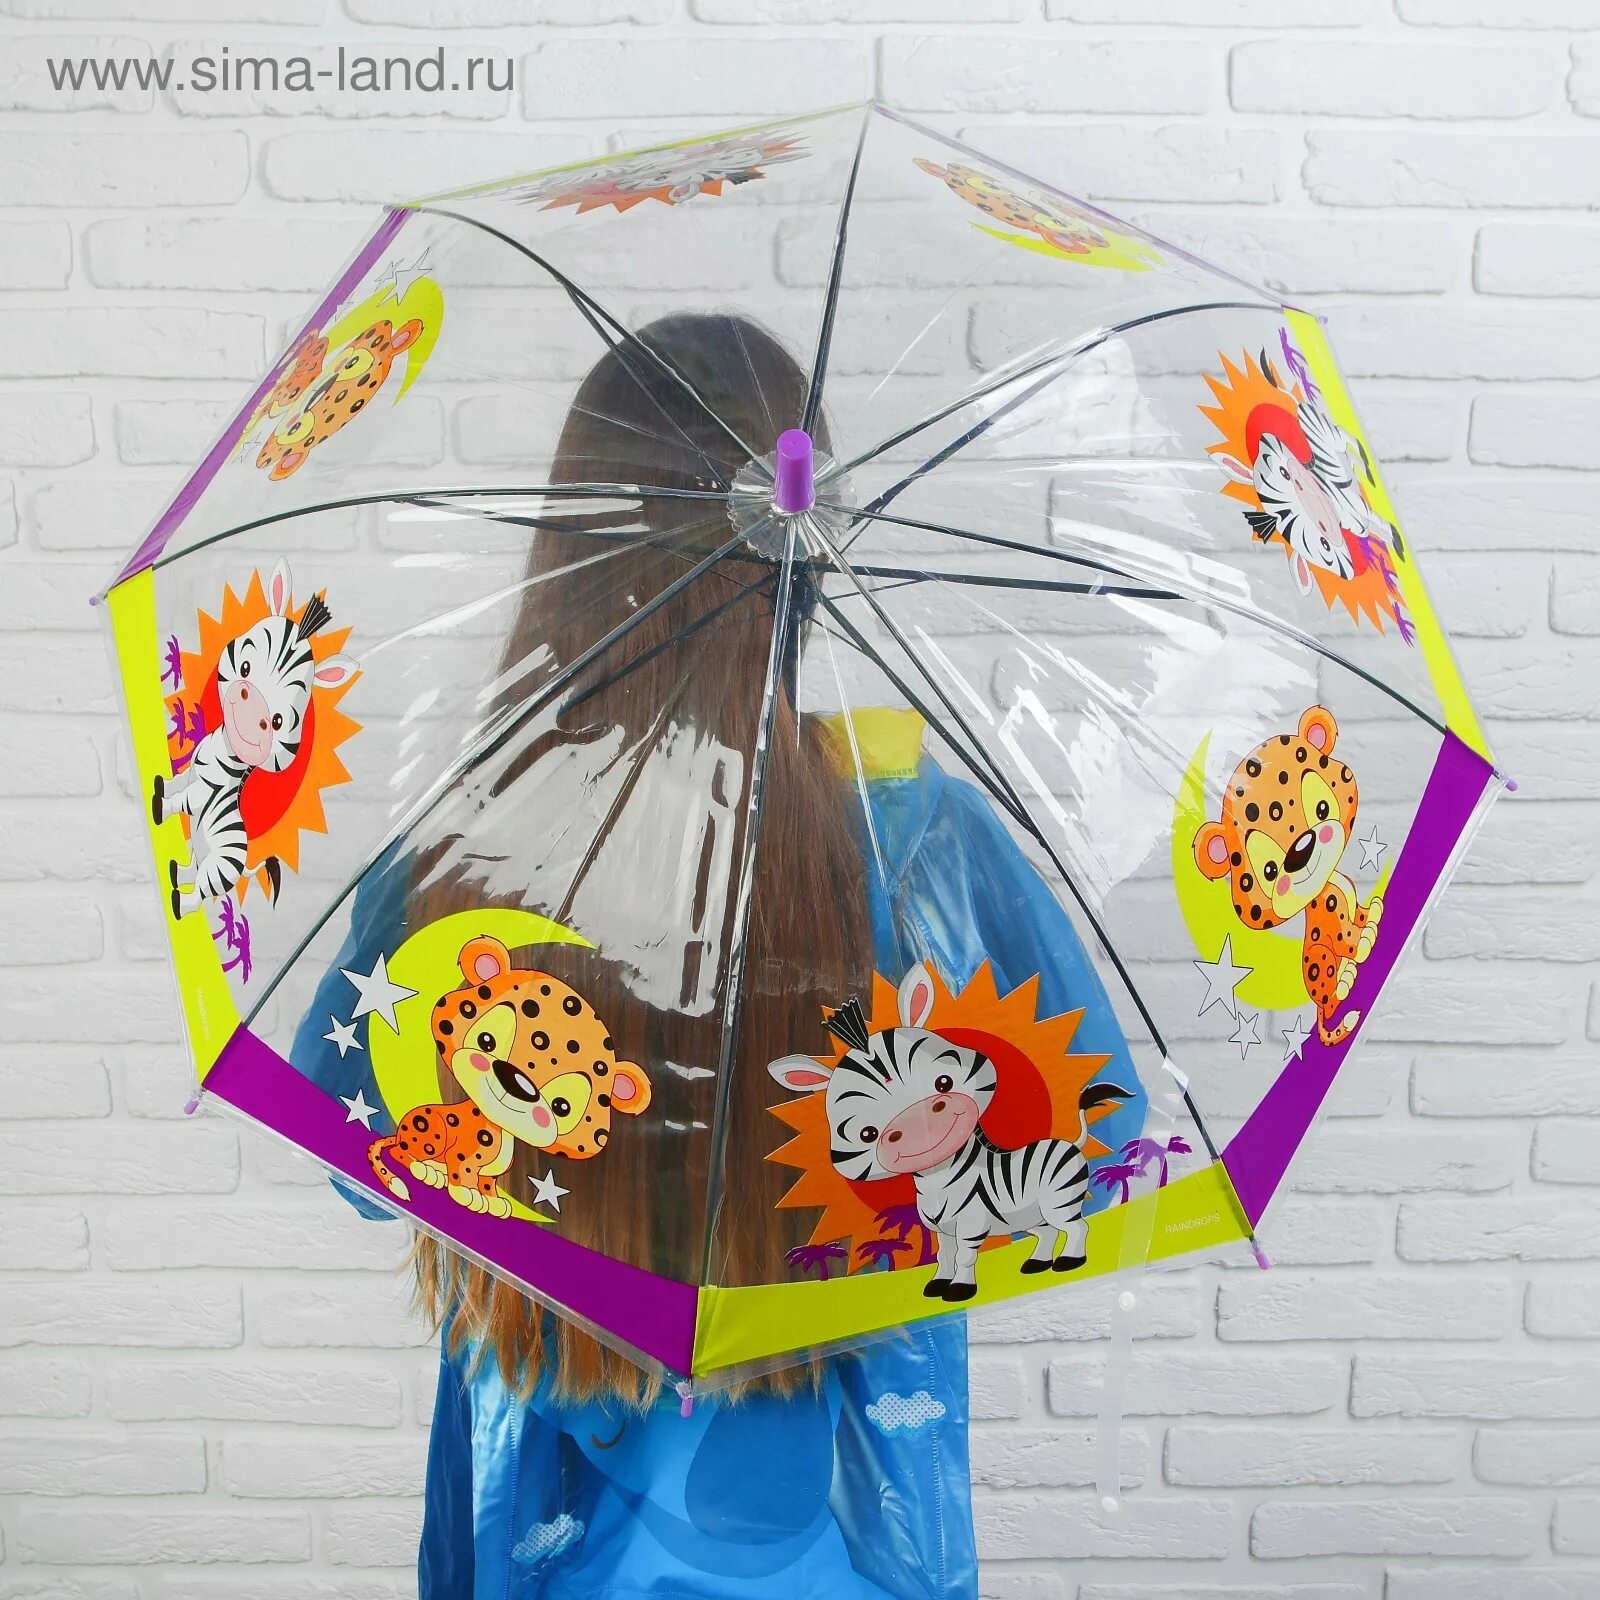 Герой зонтик. Детские зонты. Зонтик для детей. Зонтик детский для 2 лет. Малыш с зонтиком.